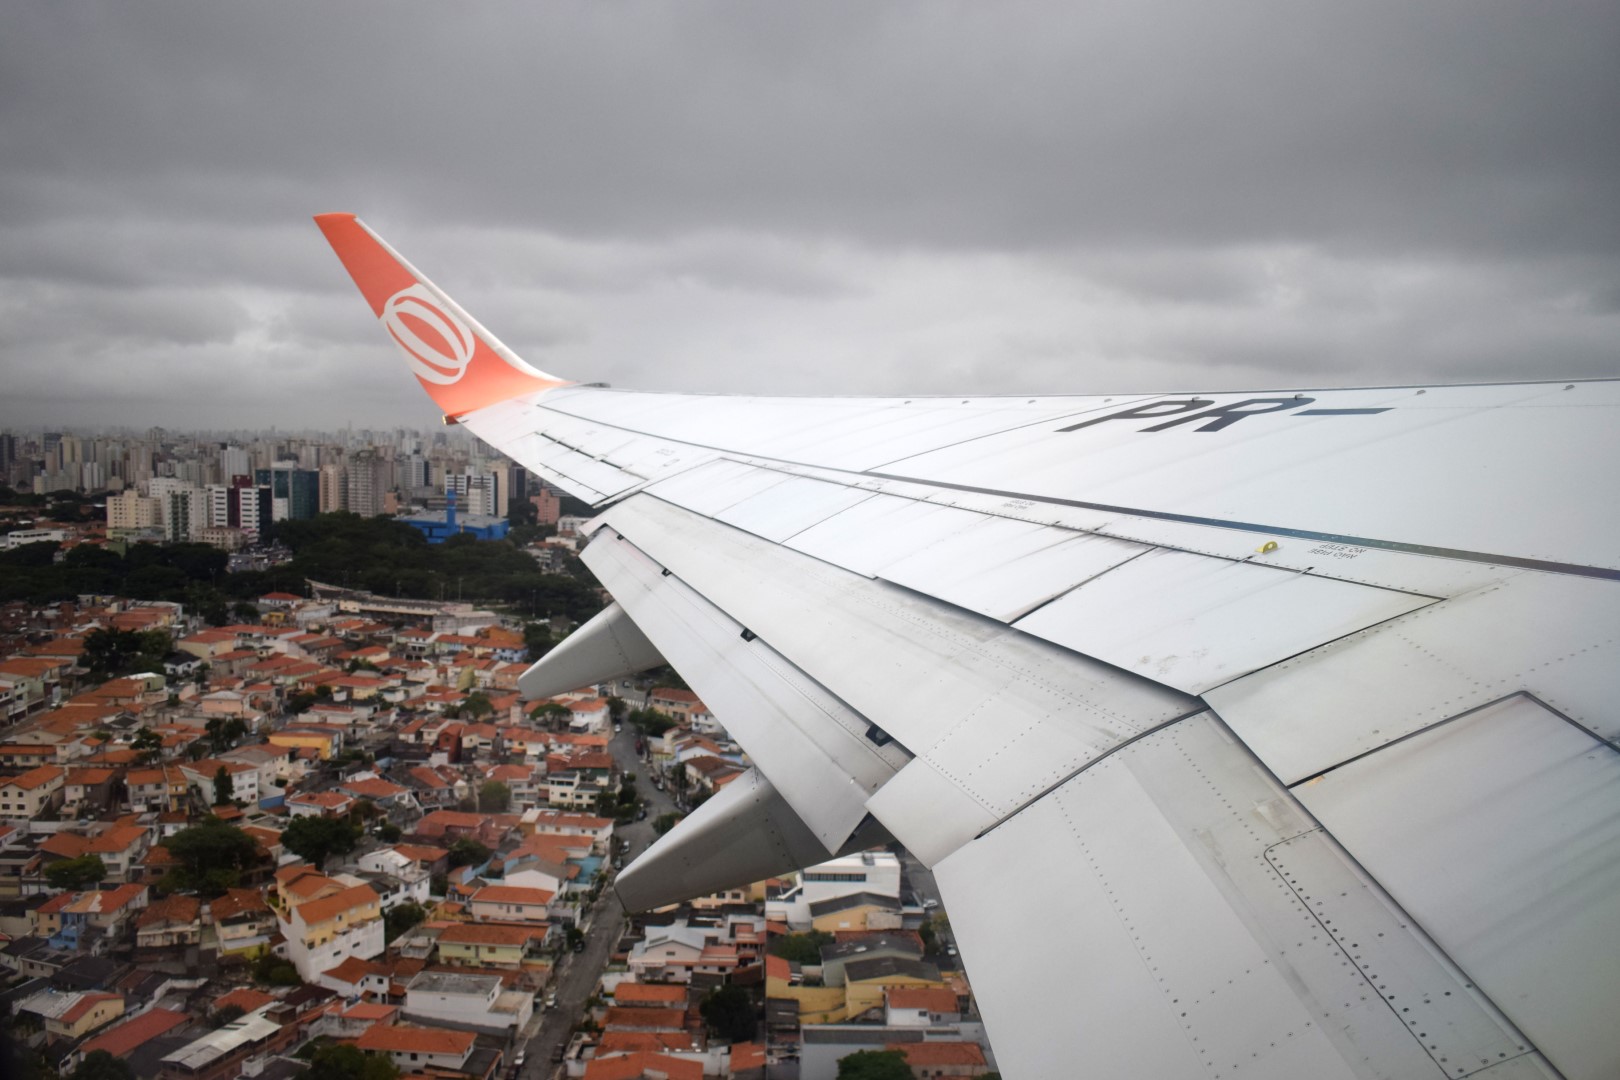 São Paulo to Rio de Janeiro, taking off at Congonhas-São Paulo Airport